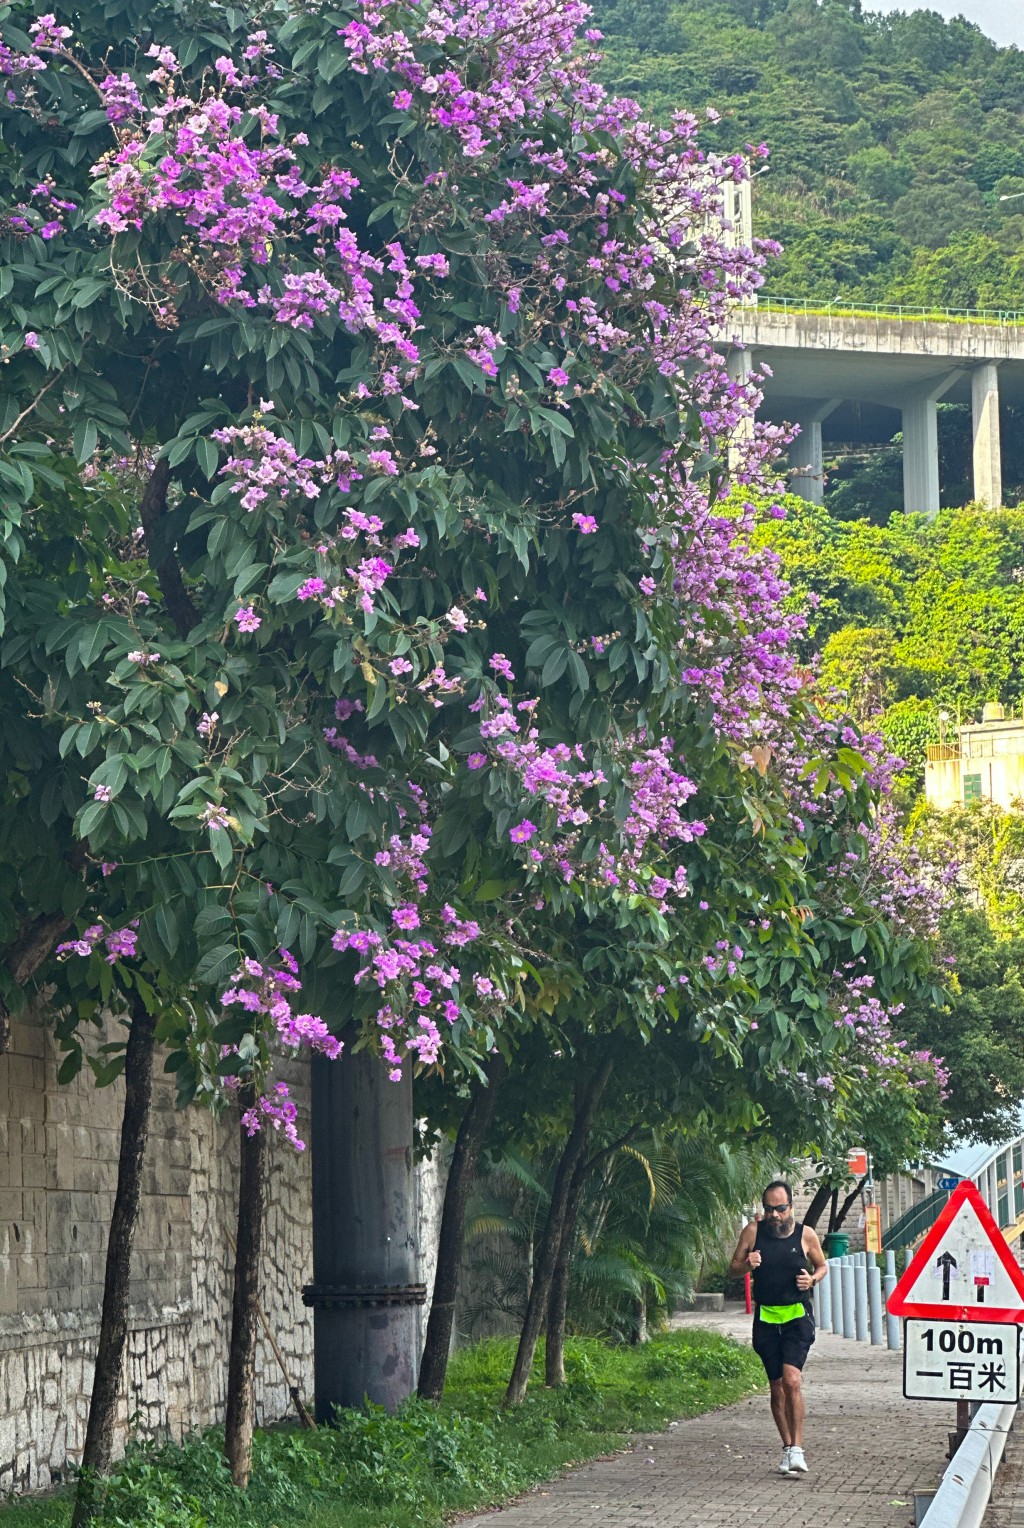 一串串如紫蝴蝶般绚丽的紫色花挂满树梢，形成令人惊叹的紫色花道。